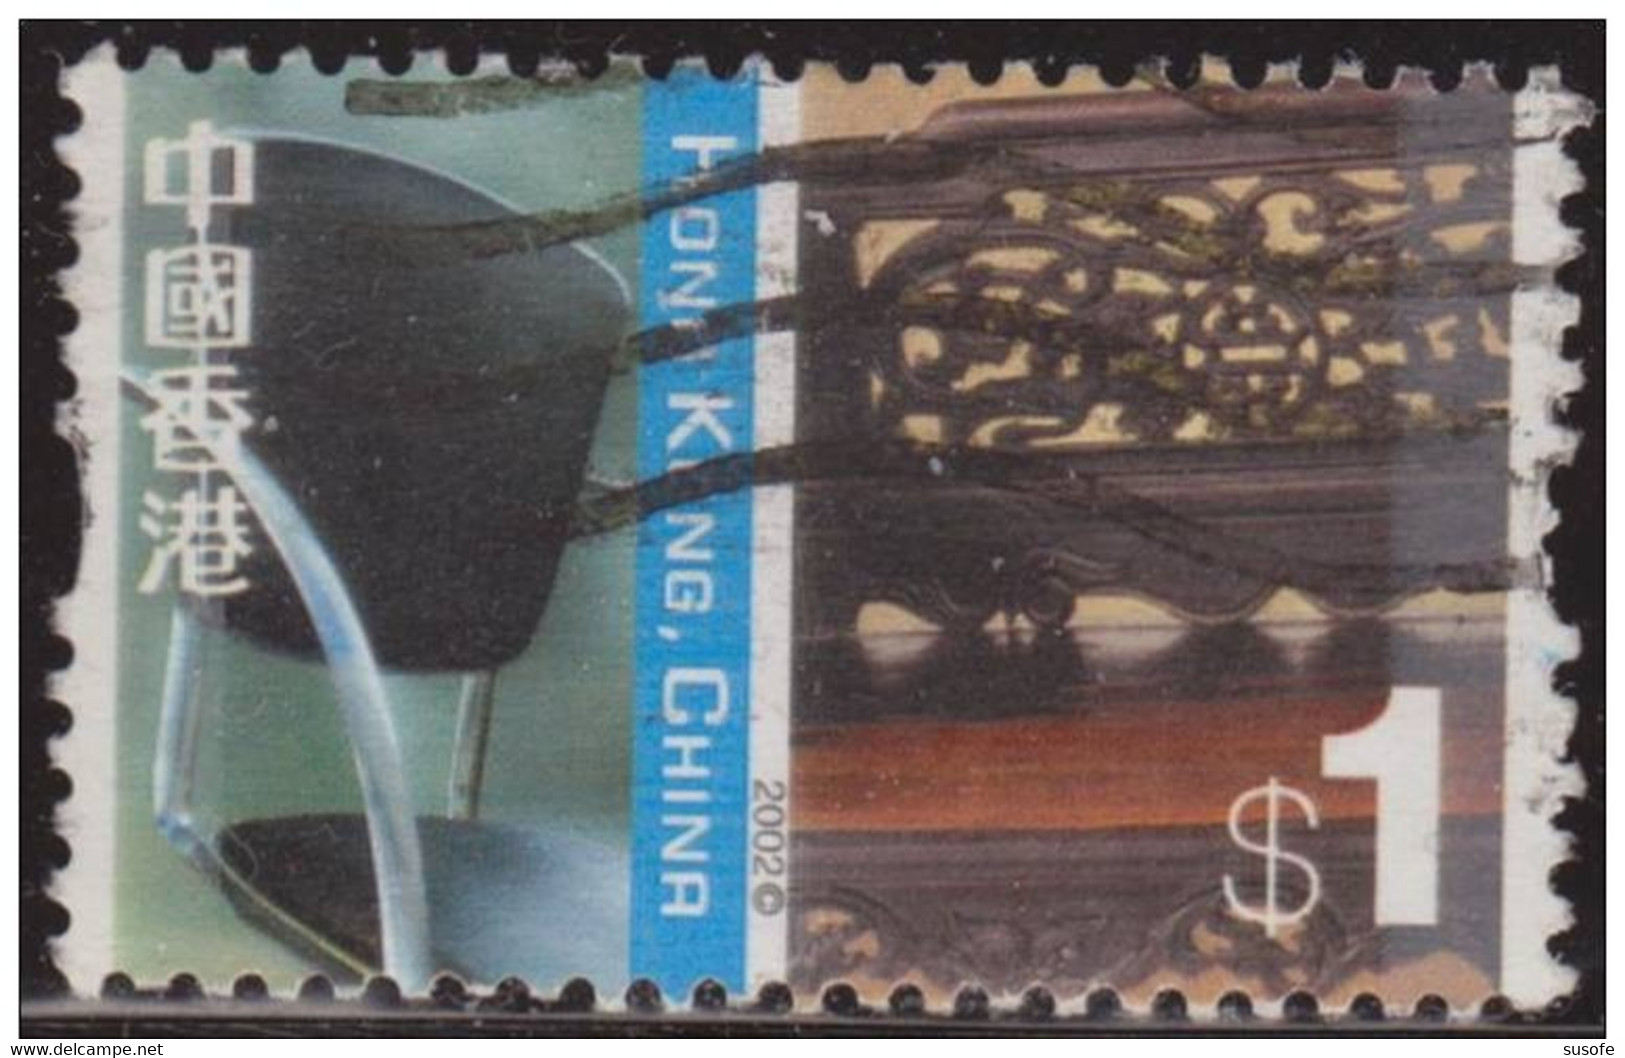 Hong Kong China 2002 Scott 1001 Sello º Cultural Diversity Silla China Y Cama Luohan Michel 1058 Yvert 1030 Stamps - Gebruikt